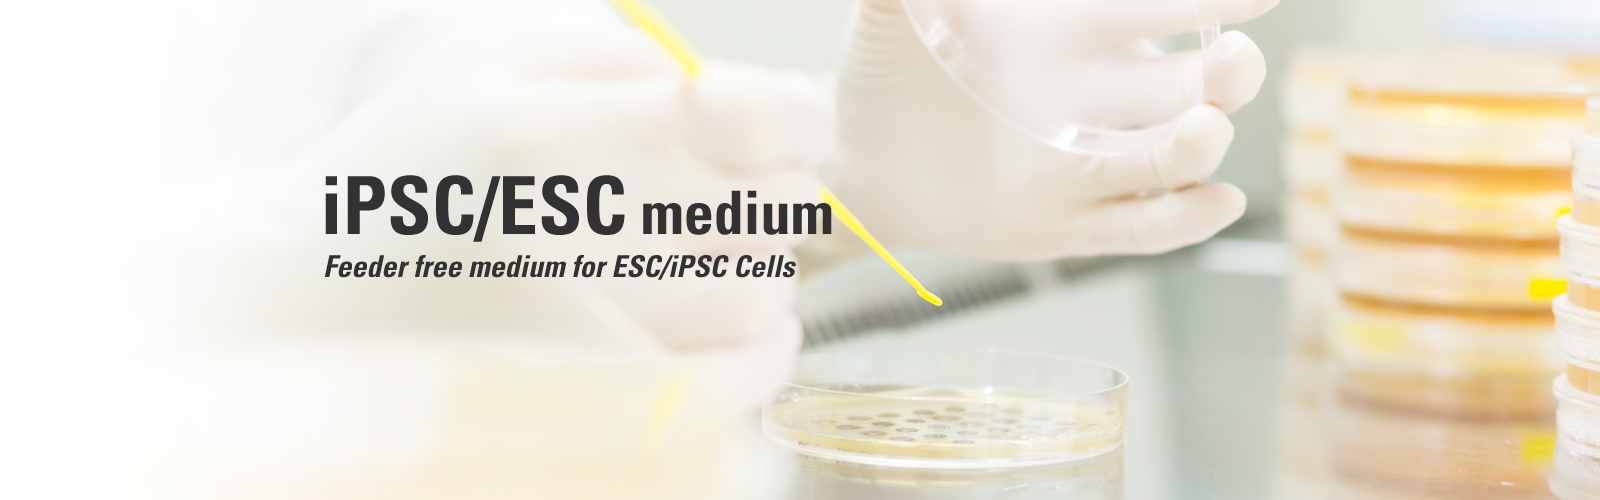 iPSC/ESC medium Feeder free medium for ESC/iPSC Cells